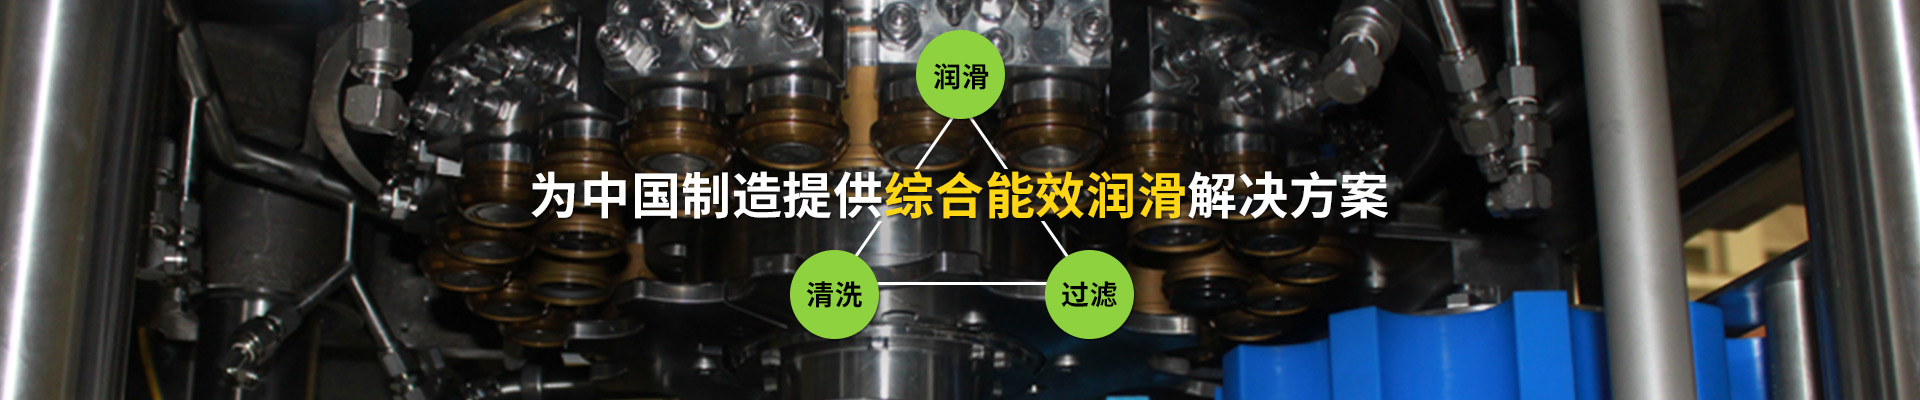 旭升·为中国制造提供综合能效润滑解决方案